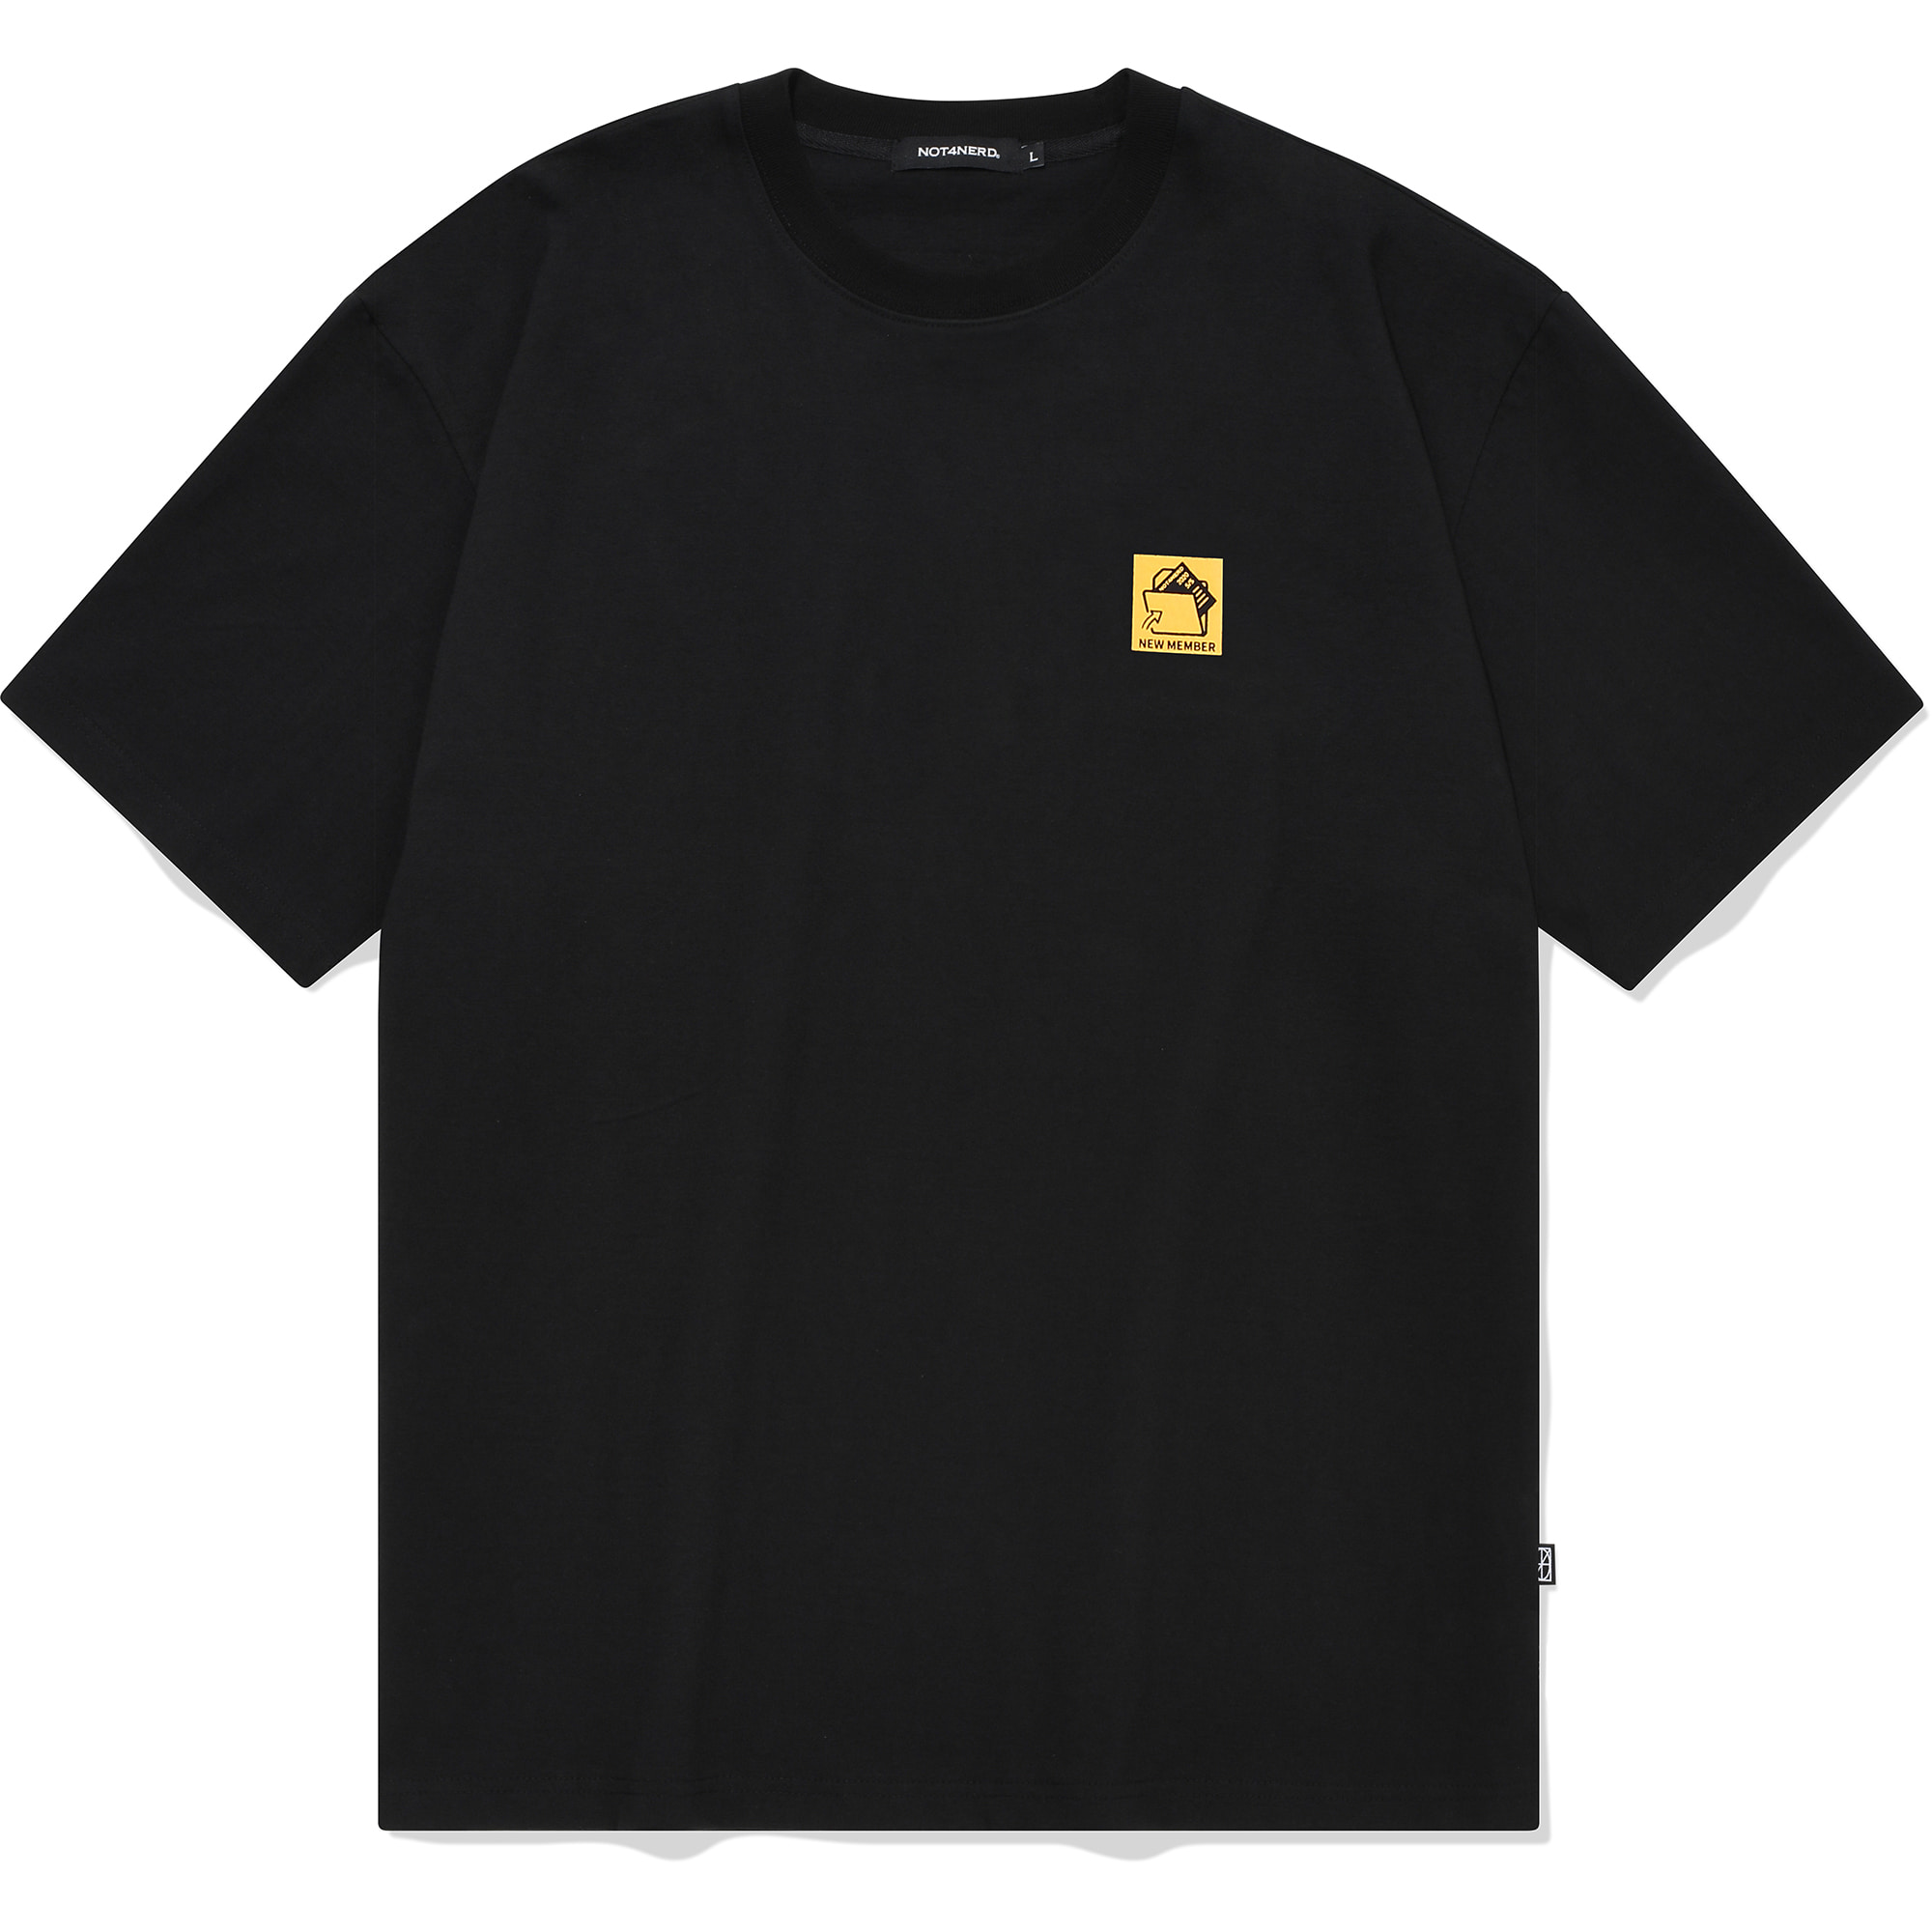 Square Folder logo T-Shirts Black,NOT4NERD